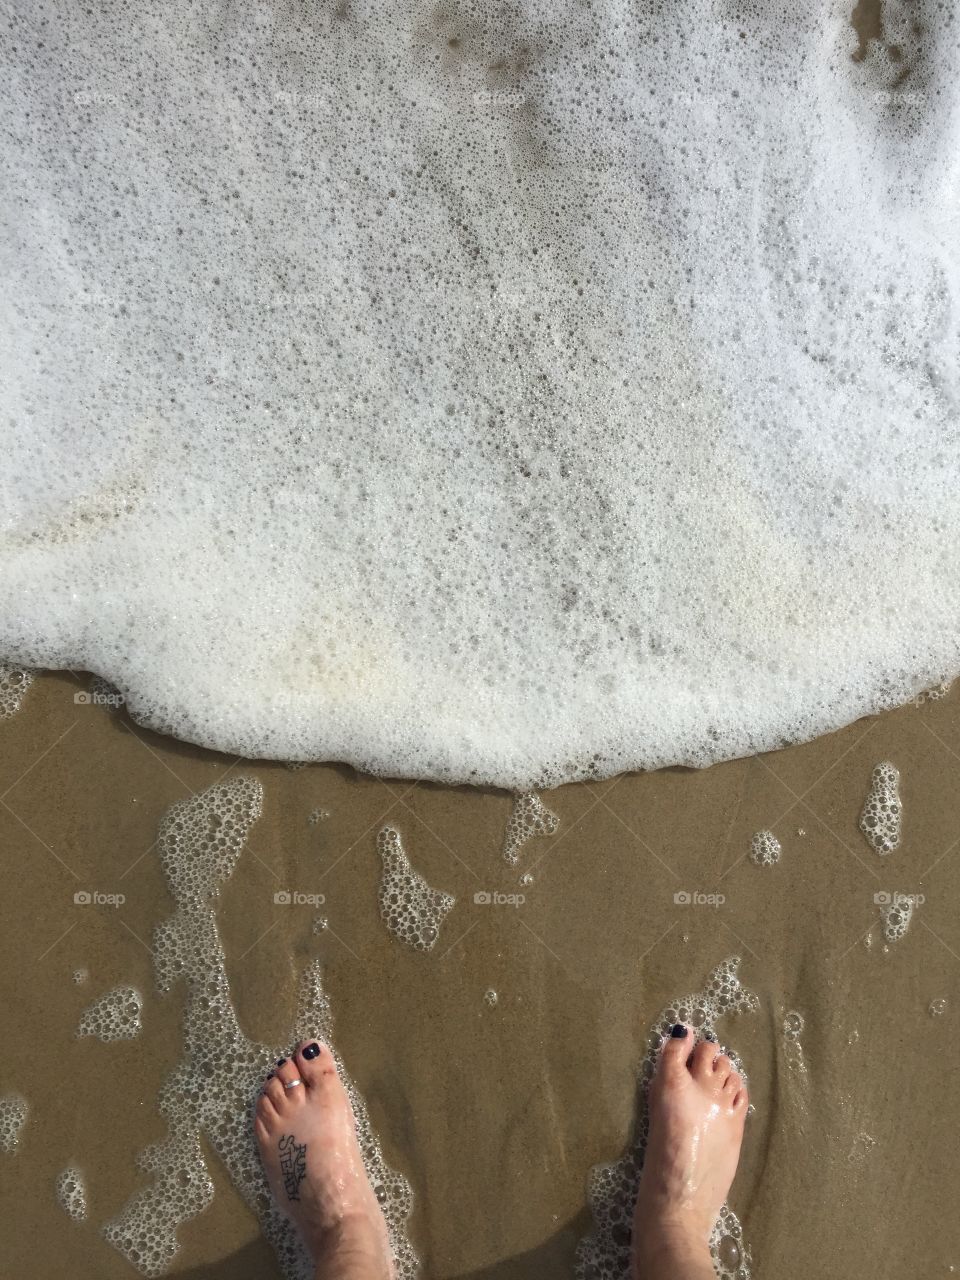 Wet, Foam, Beach, Sand, People